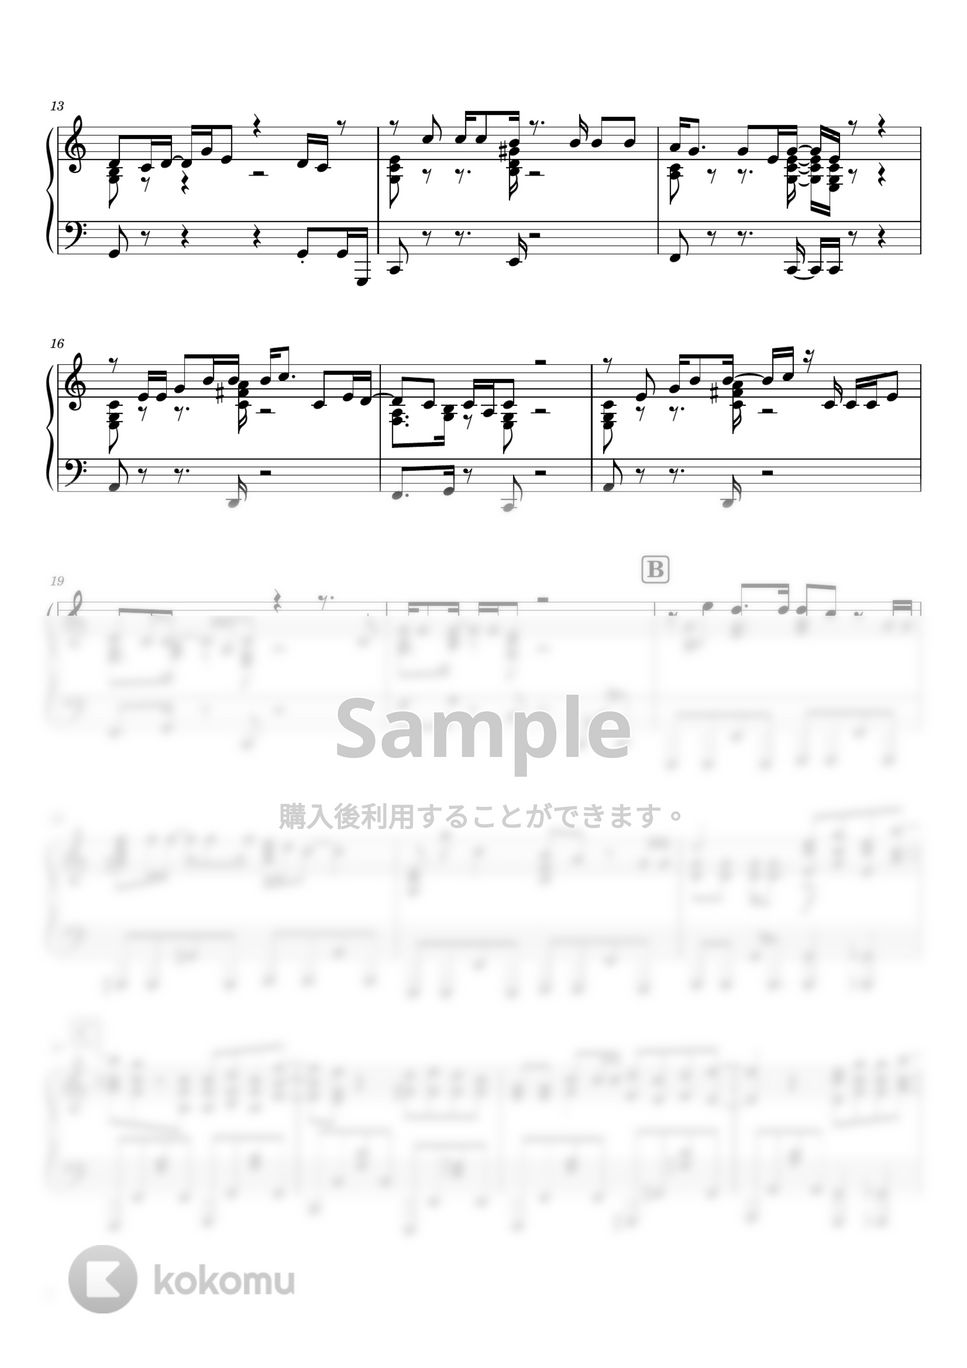 マカロニえんぴつ - 星が泳ぐ (ピアノソロ / 上級) by SuperMomoFactory